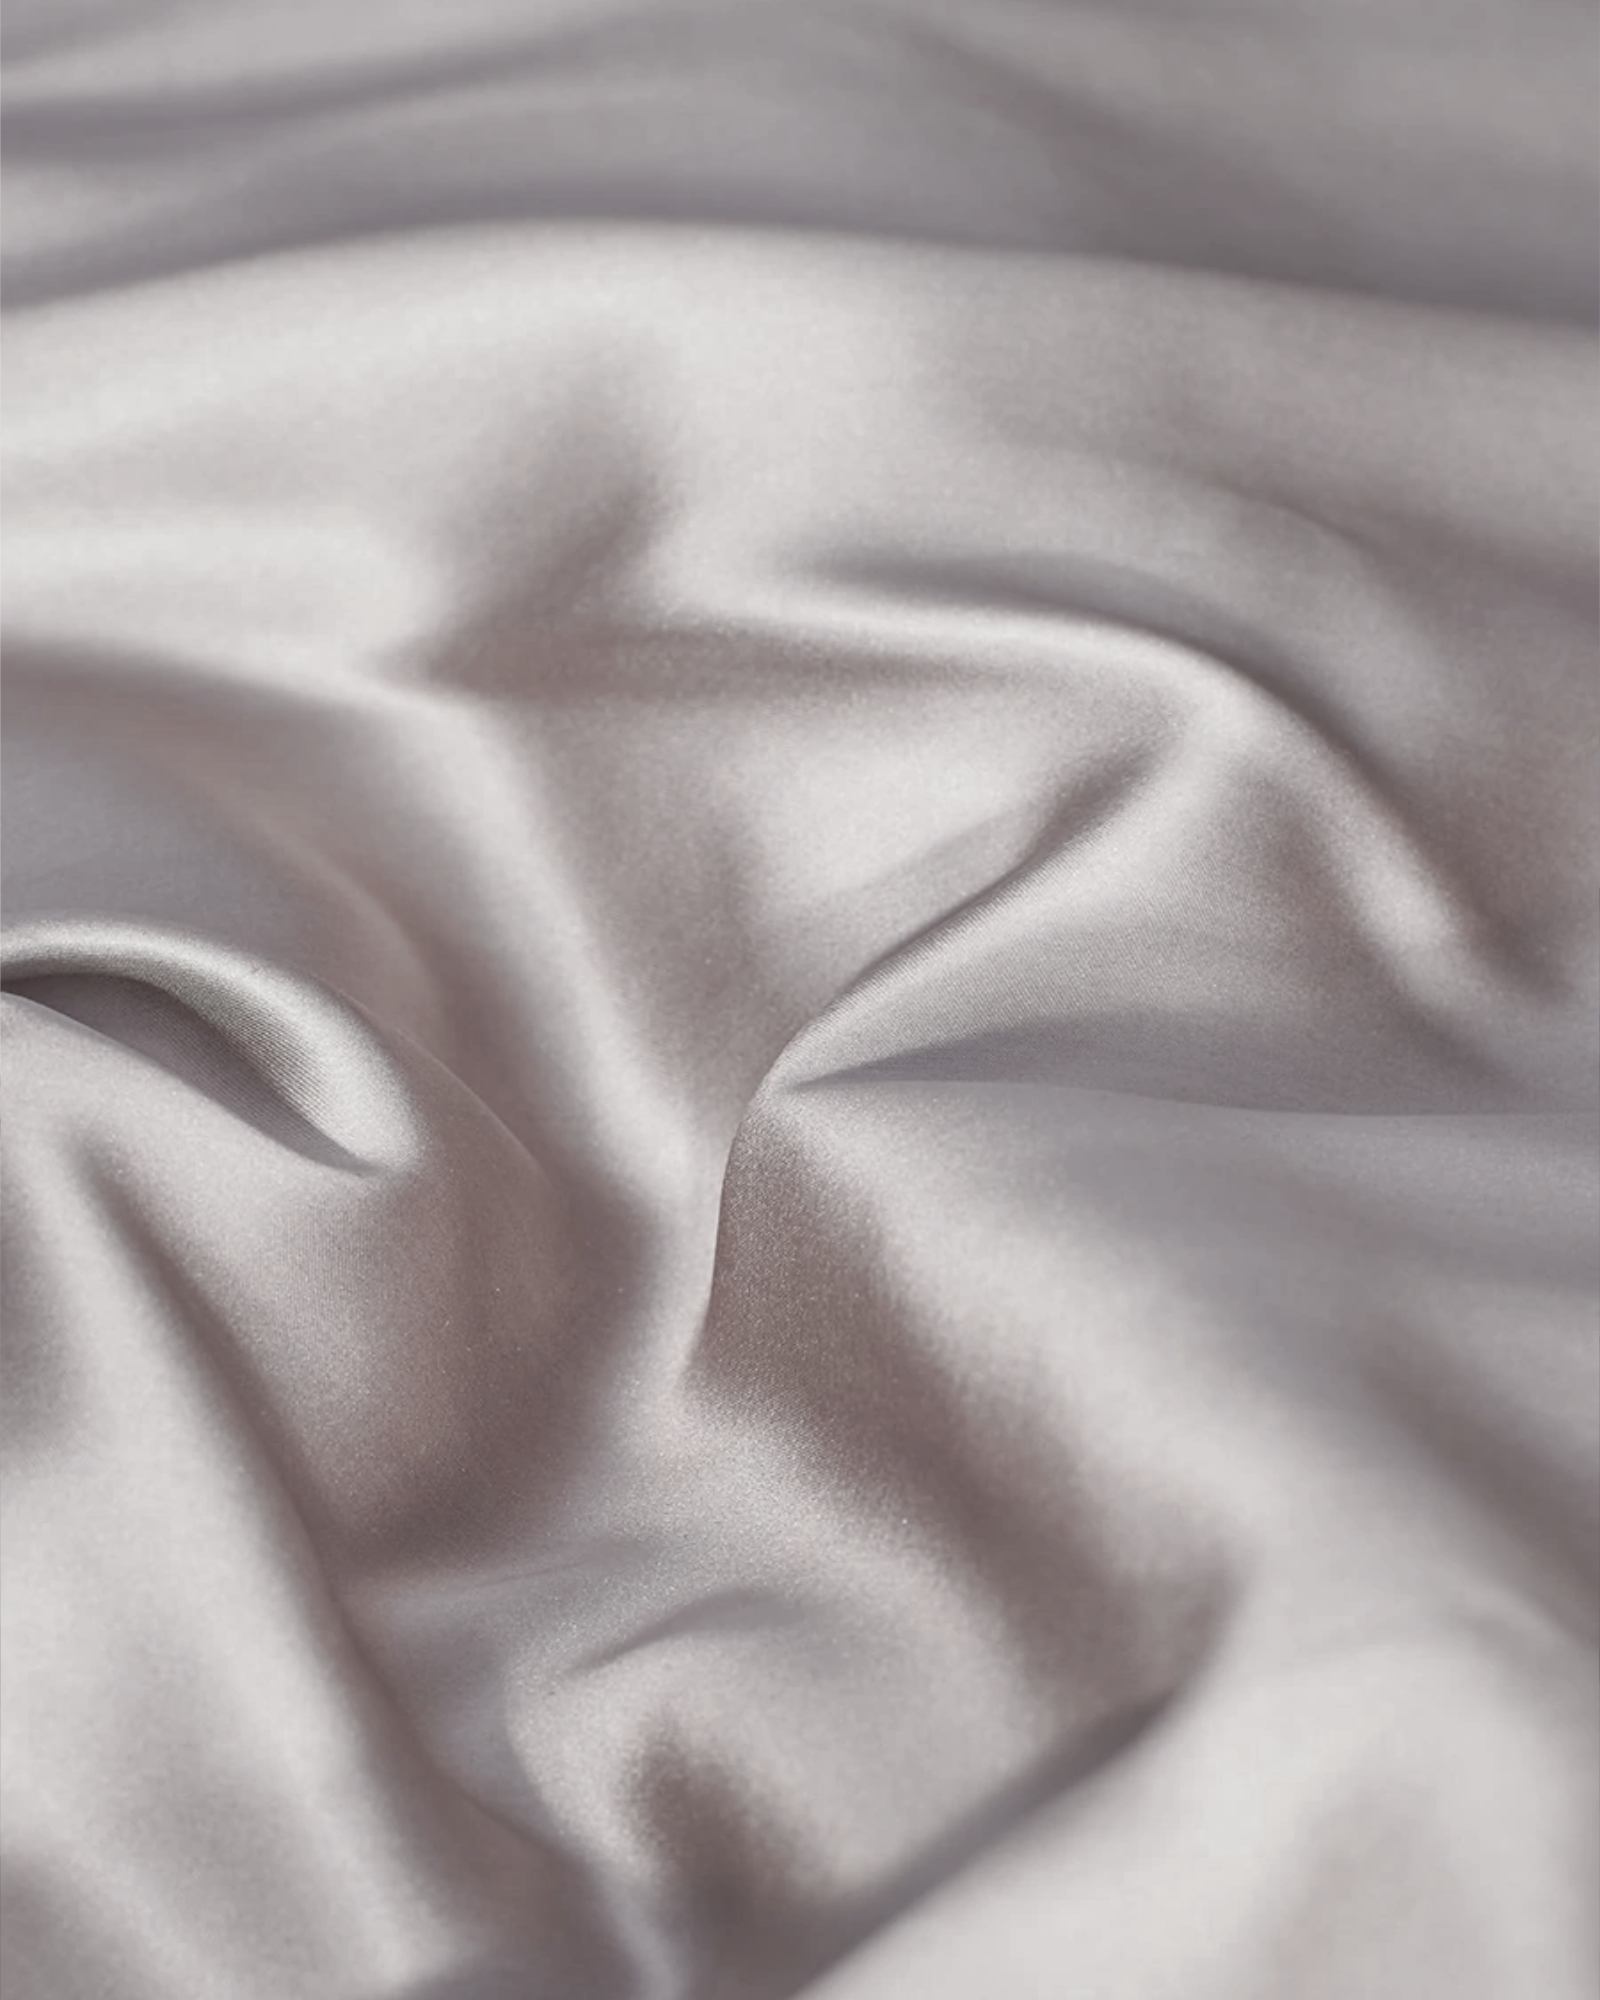 Gingerlily - Bed linen set SILK ivory - 260x240 cm + 2 slopen 65x65 cm - ivory